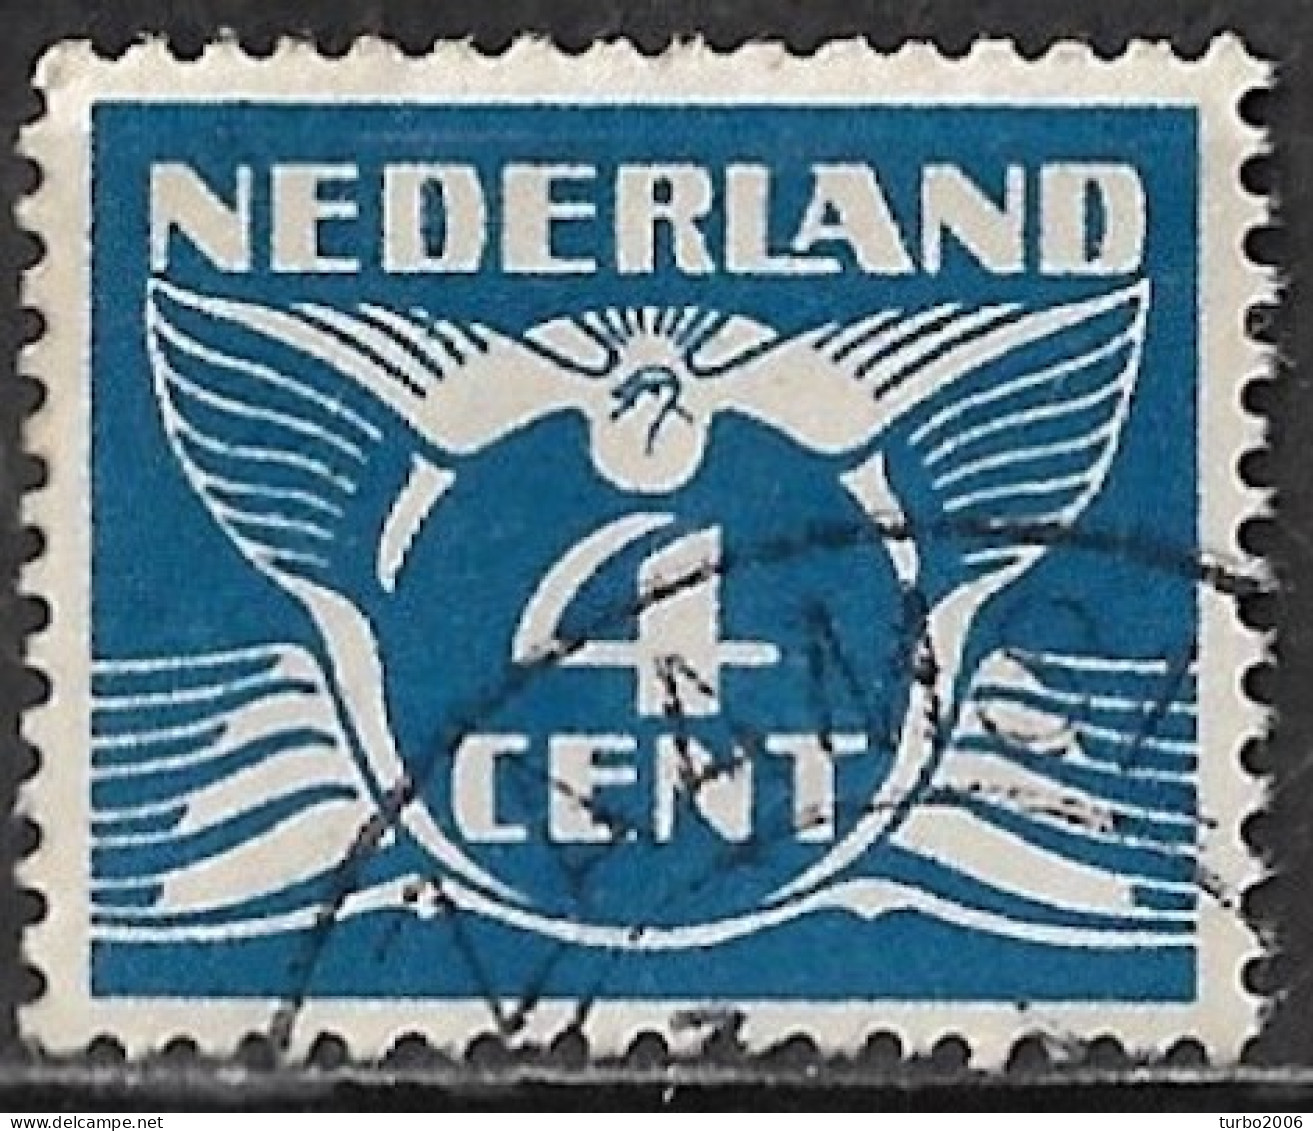 Blauwe Kras Door De Vleugel Onder De 1e D Van NeDerland In 1924-1925 Vliegende Duif 4 Cent Blauw Zonder WM NVPH 148 - Variétés Et Curiosités